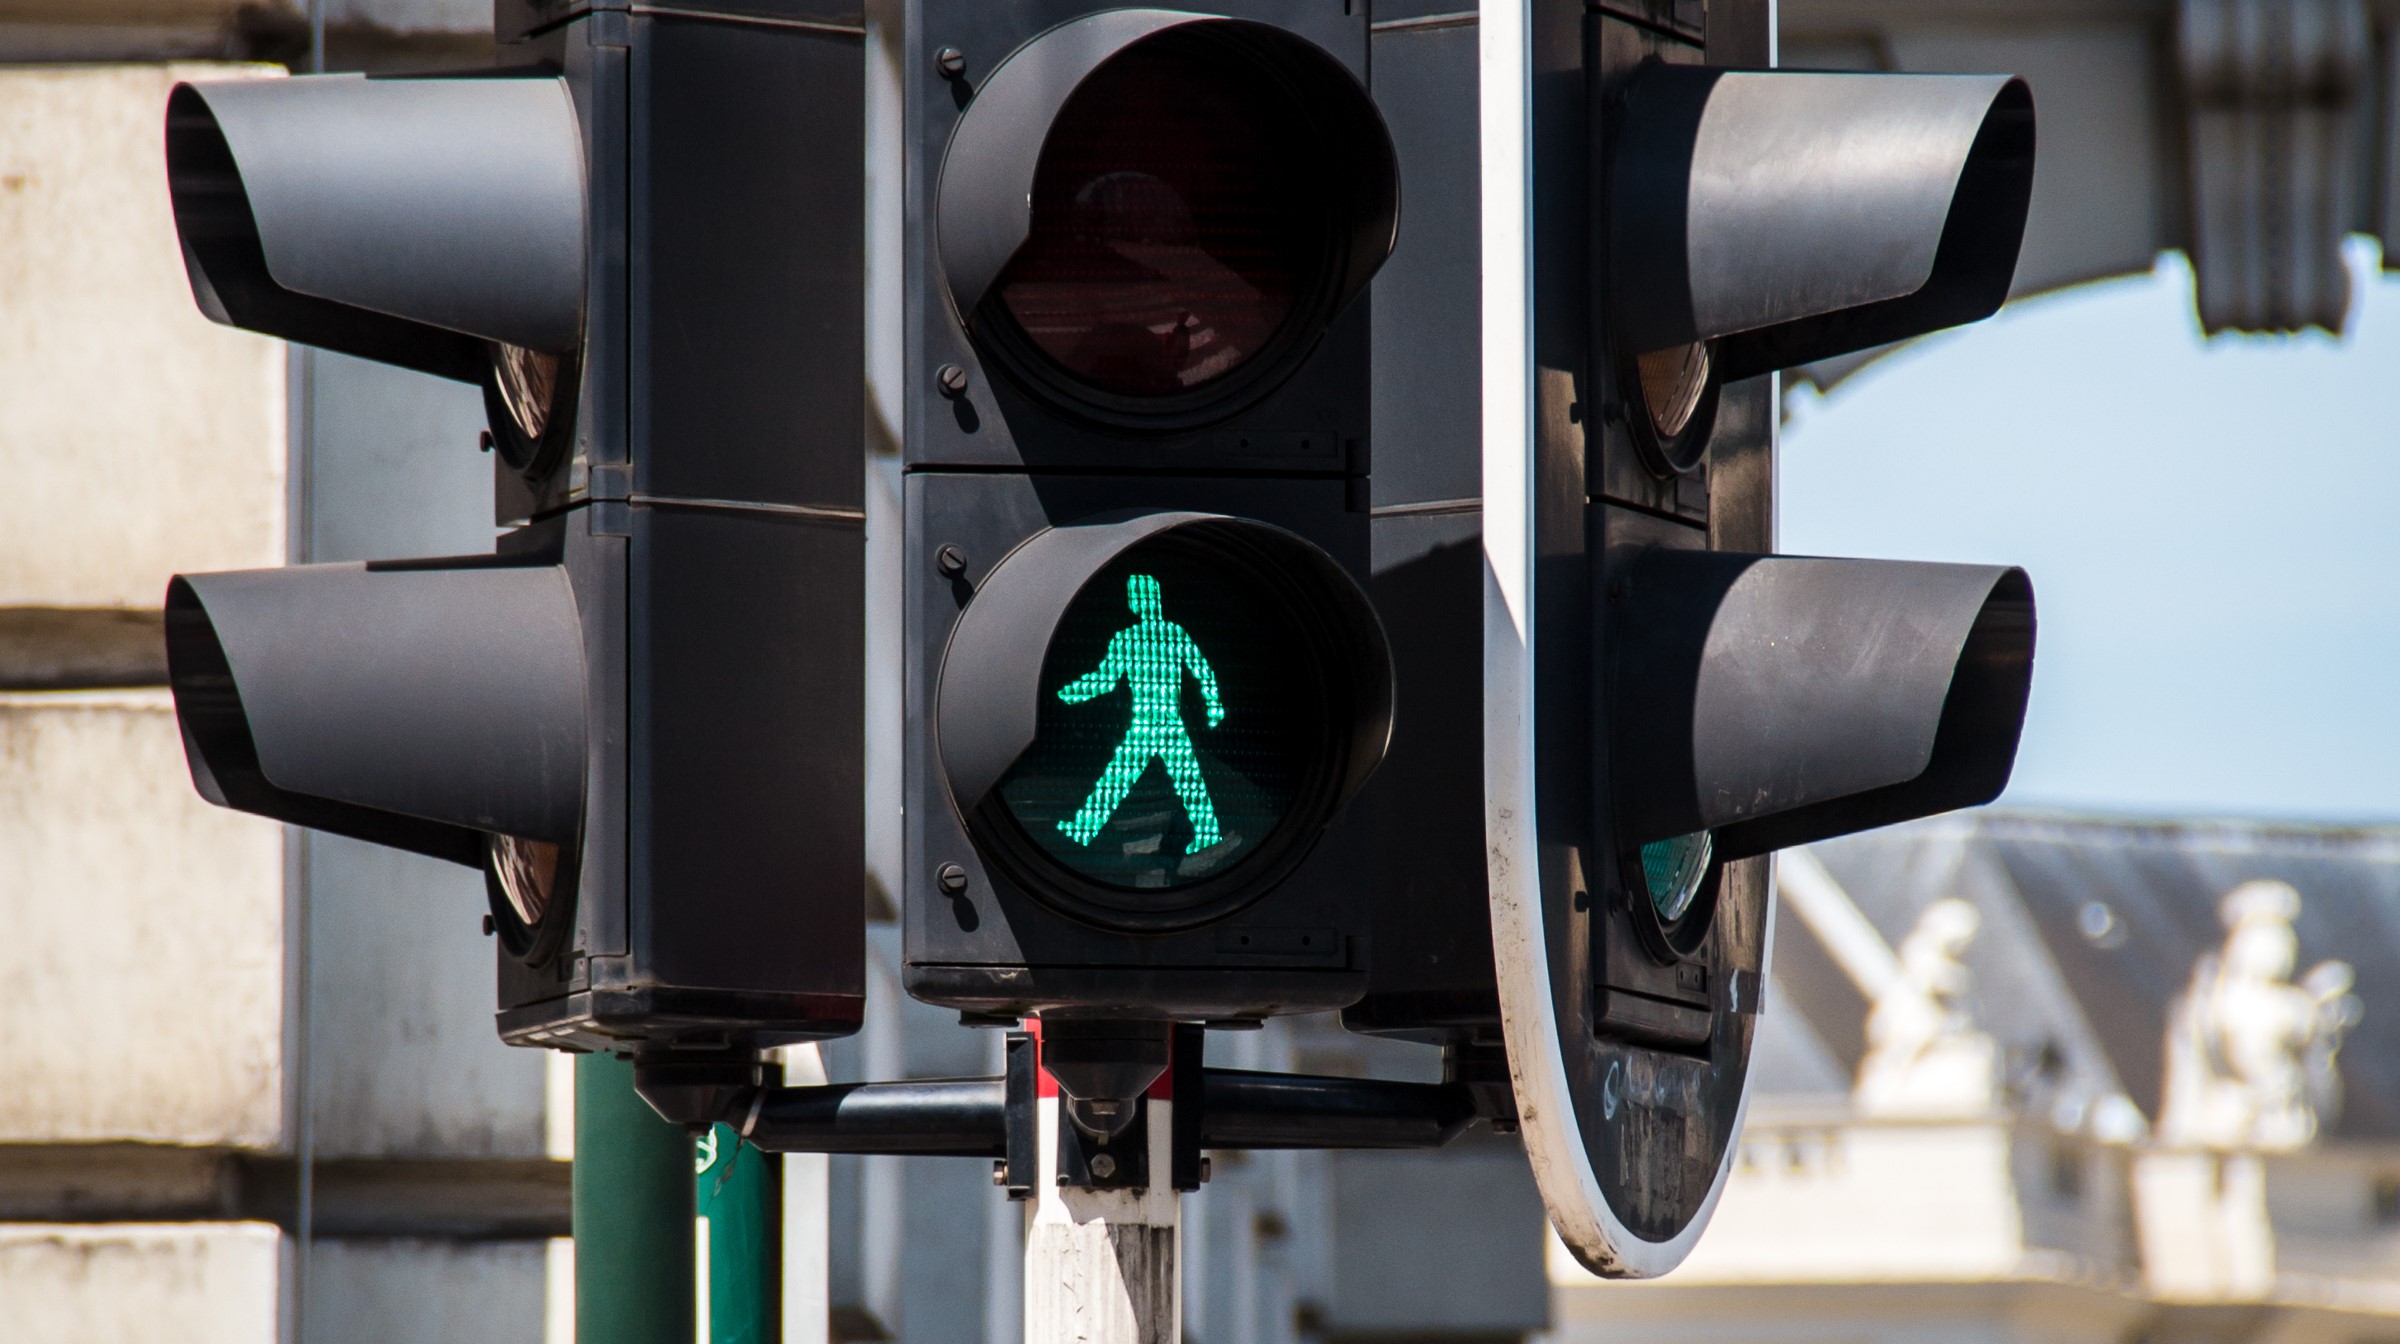 A green pedestrian light in Brussels  